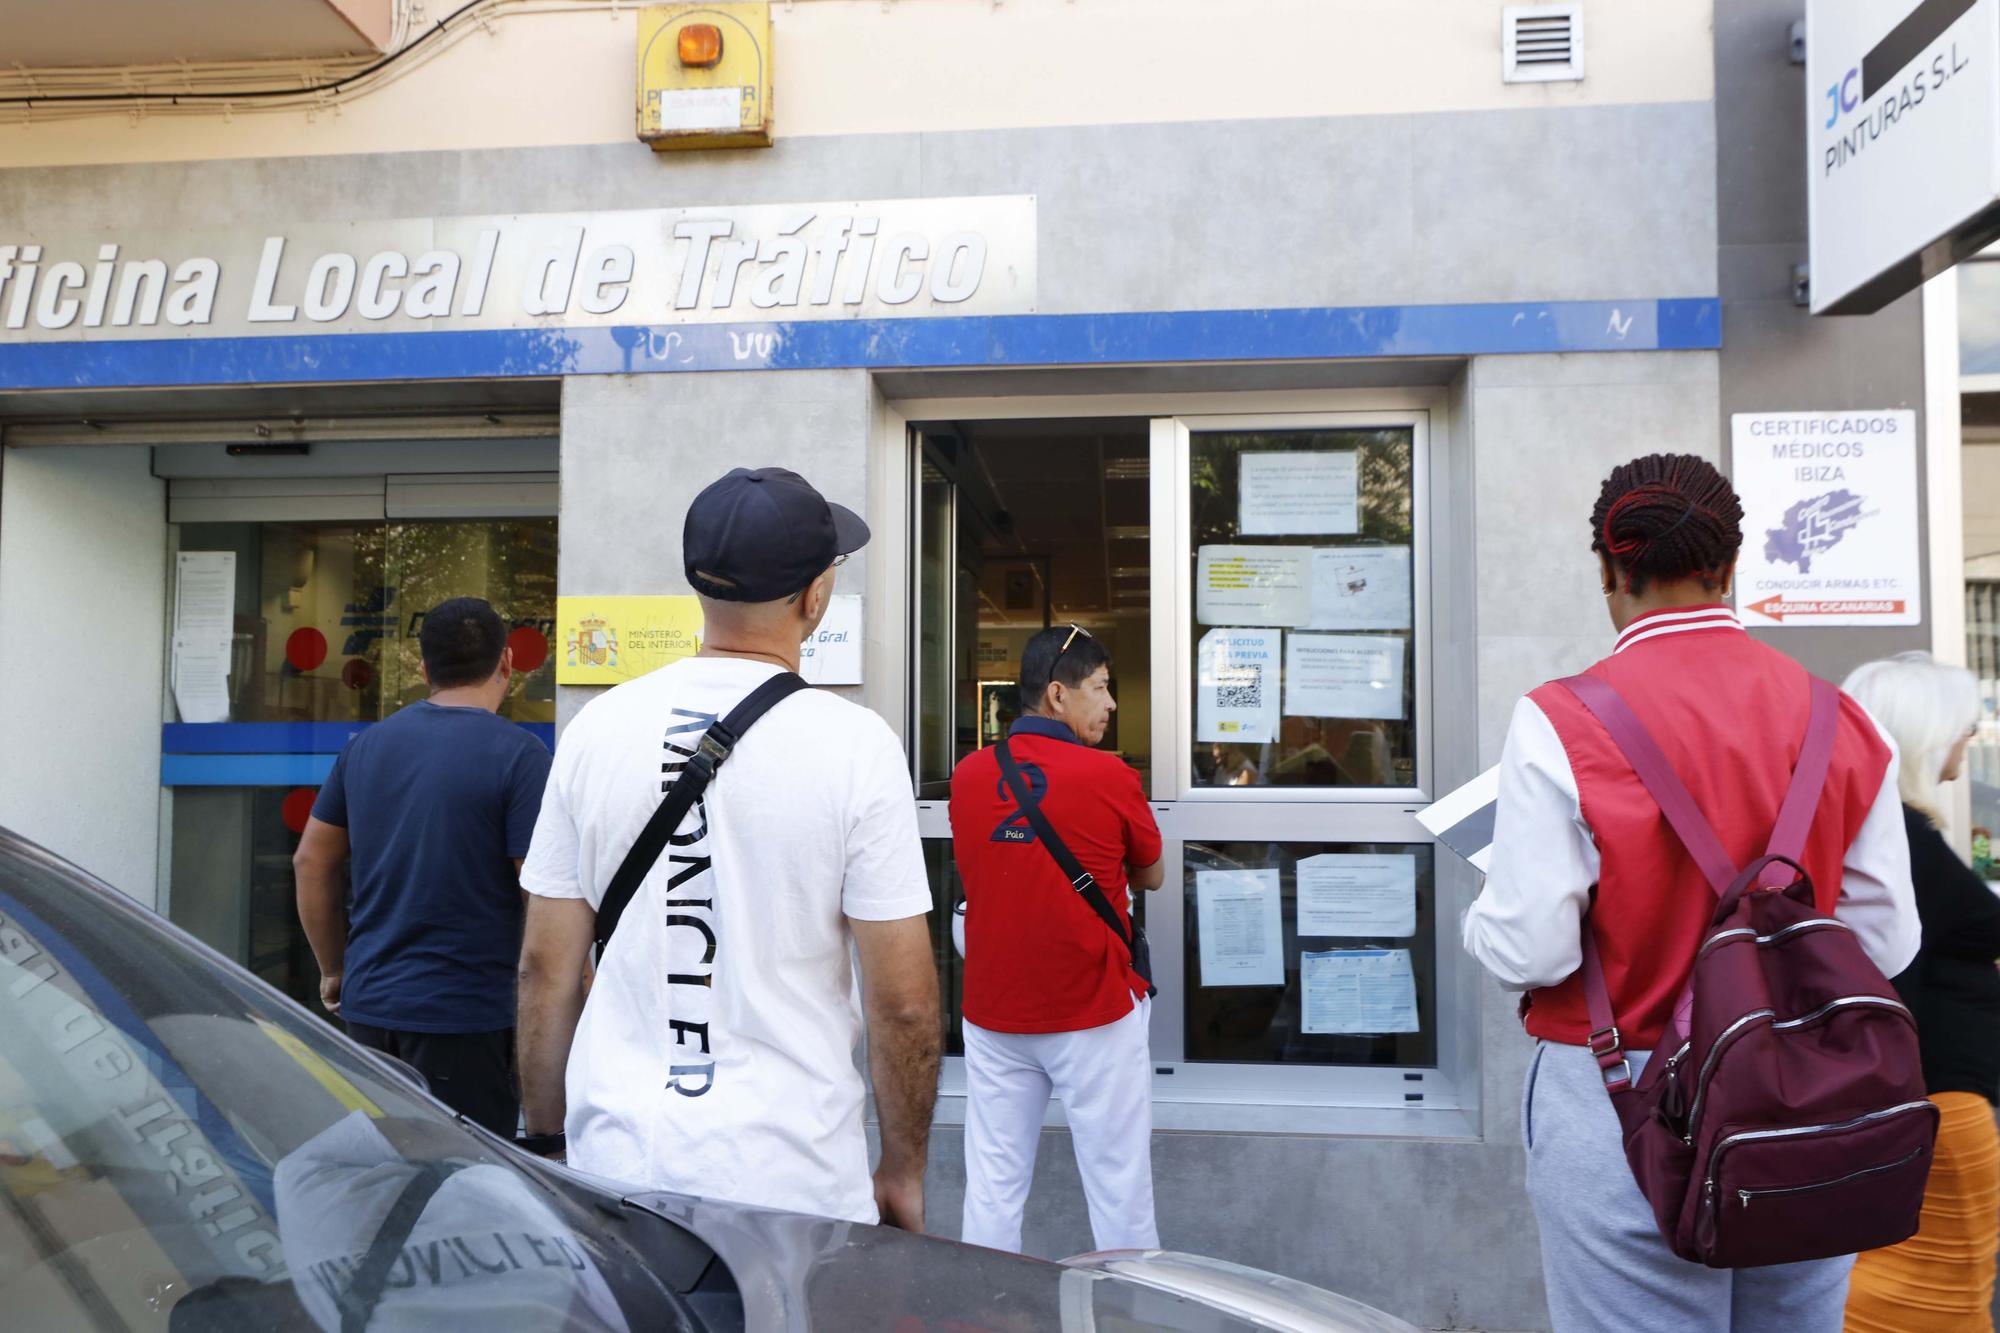 Galería de imágenes de los problemas de la oficina de Tráfico en Ibiza